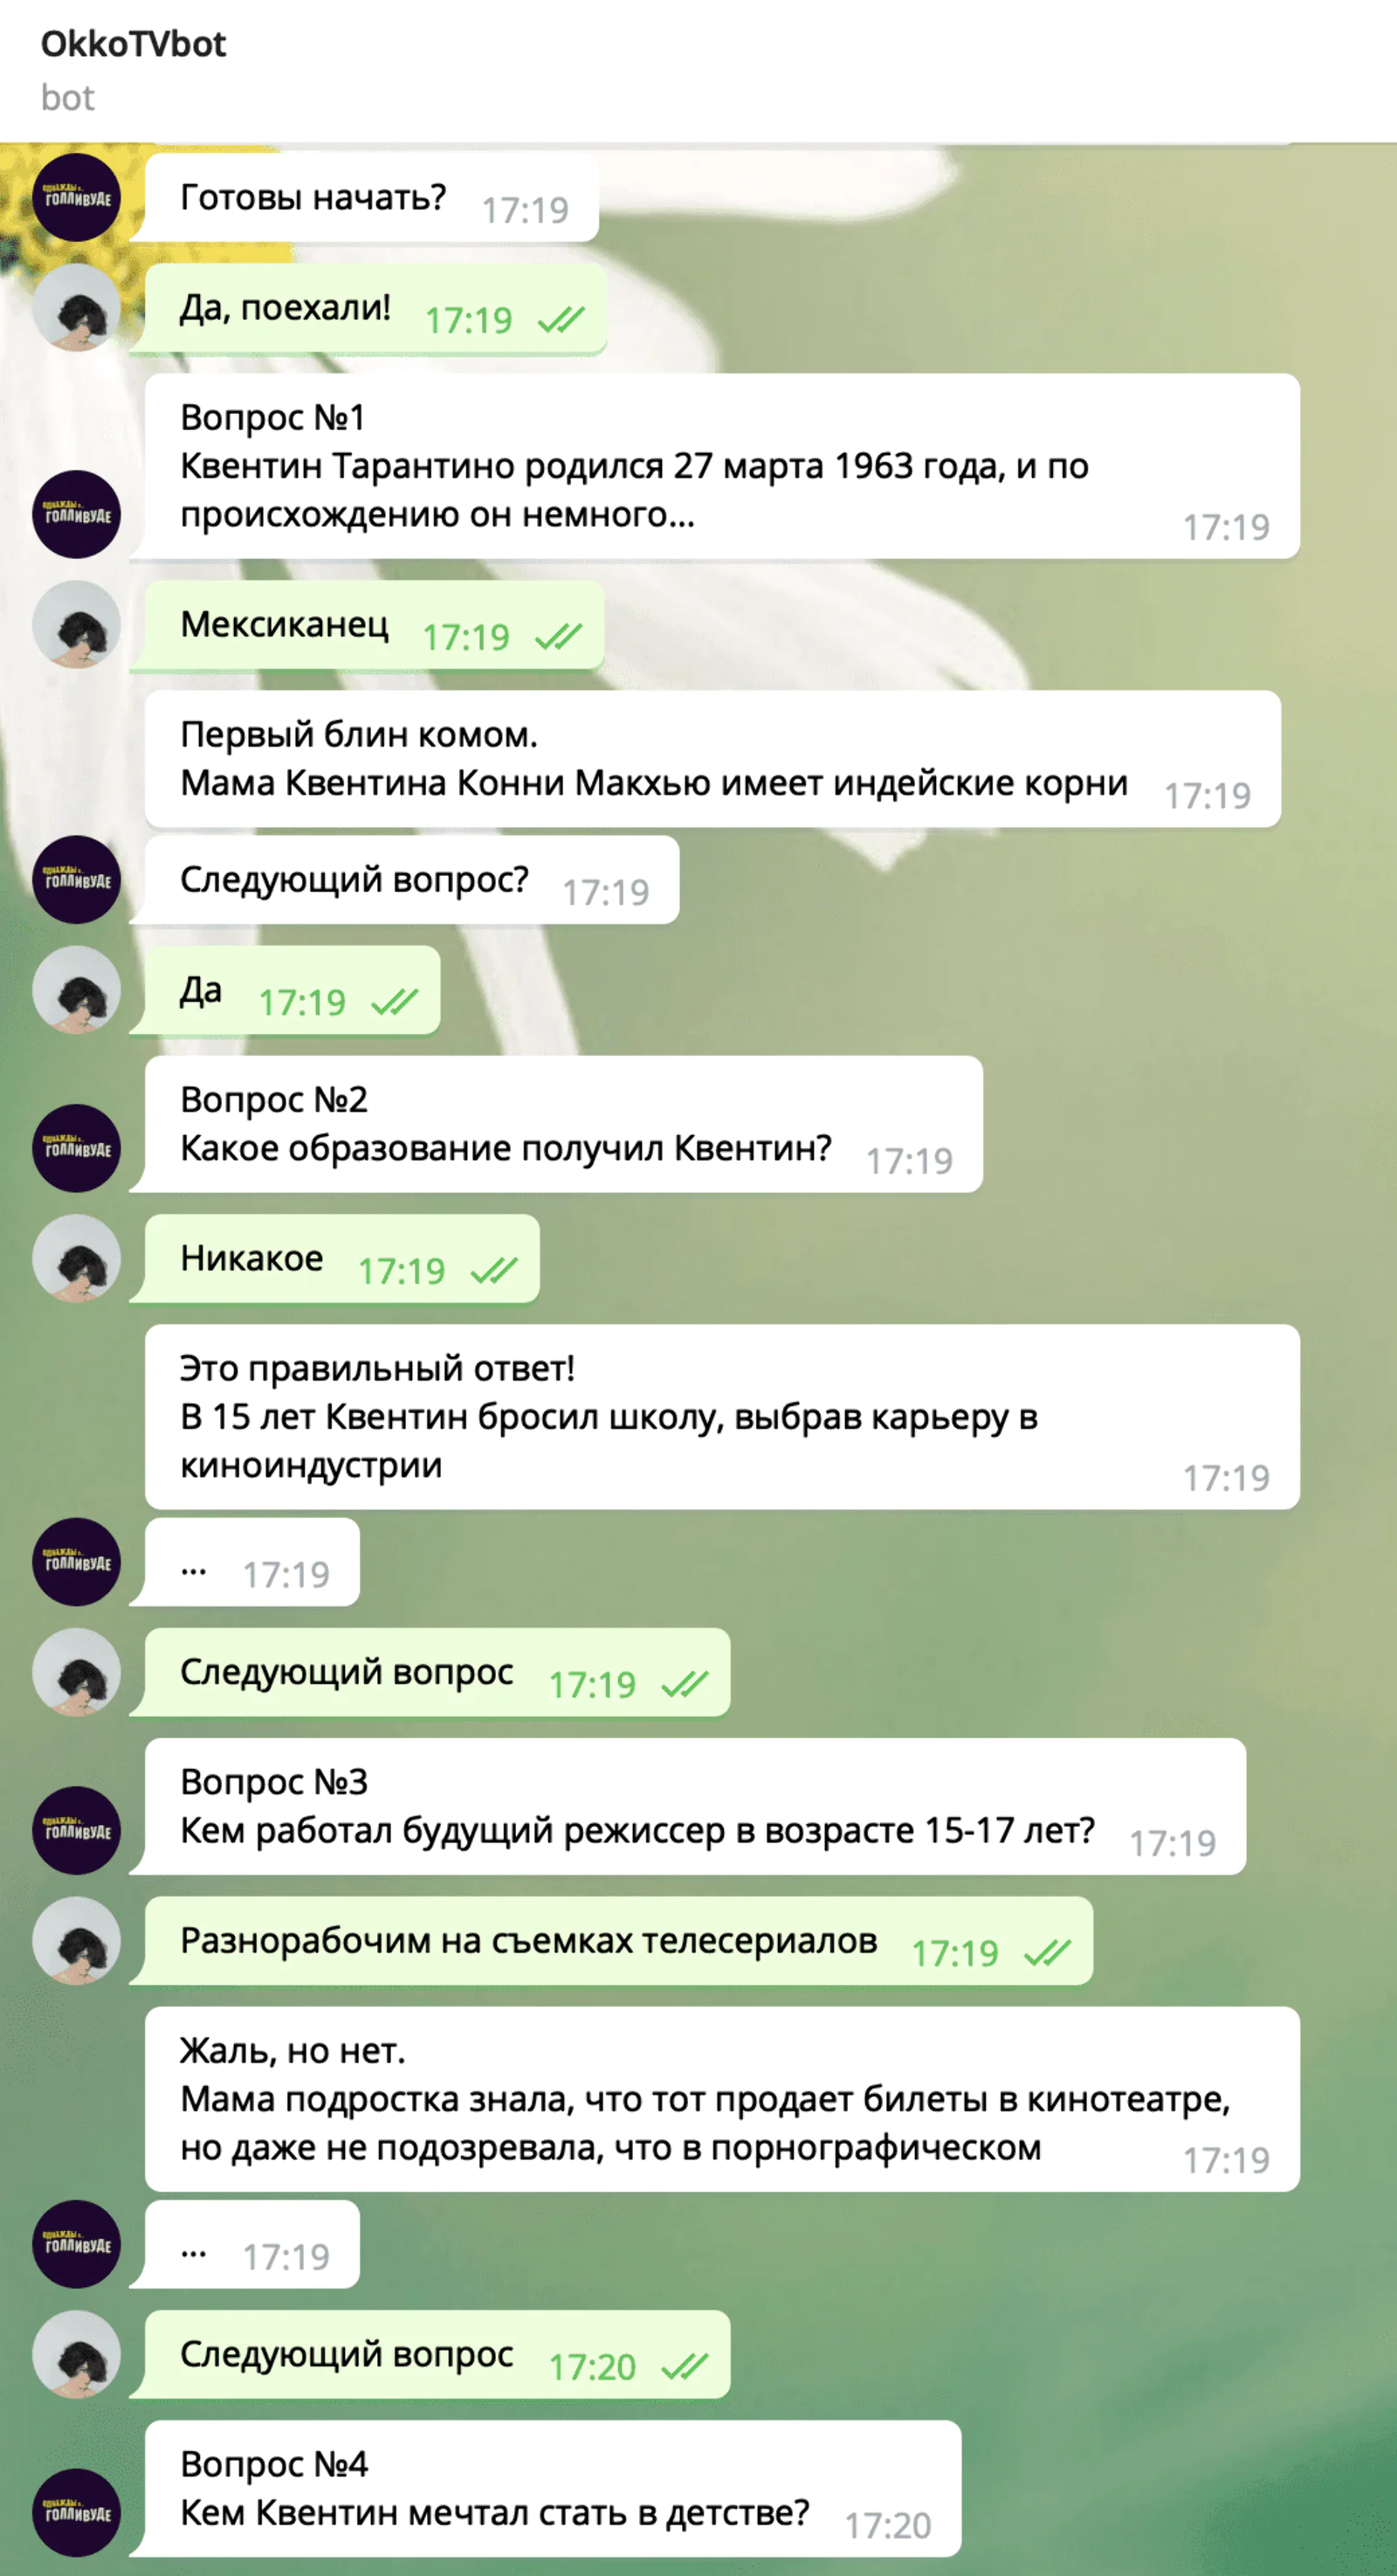 Переписка с чат-ботом в Telegram